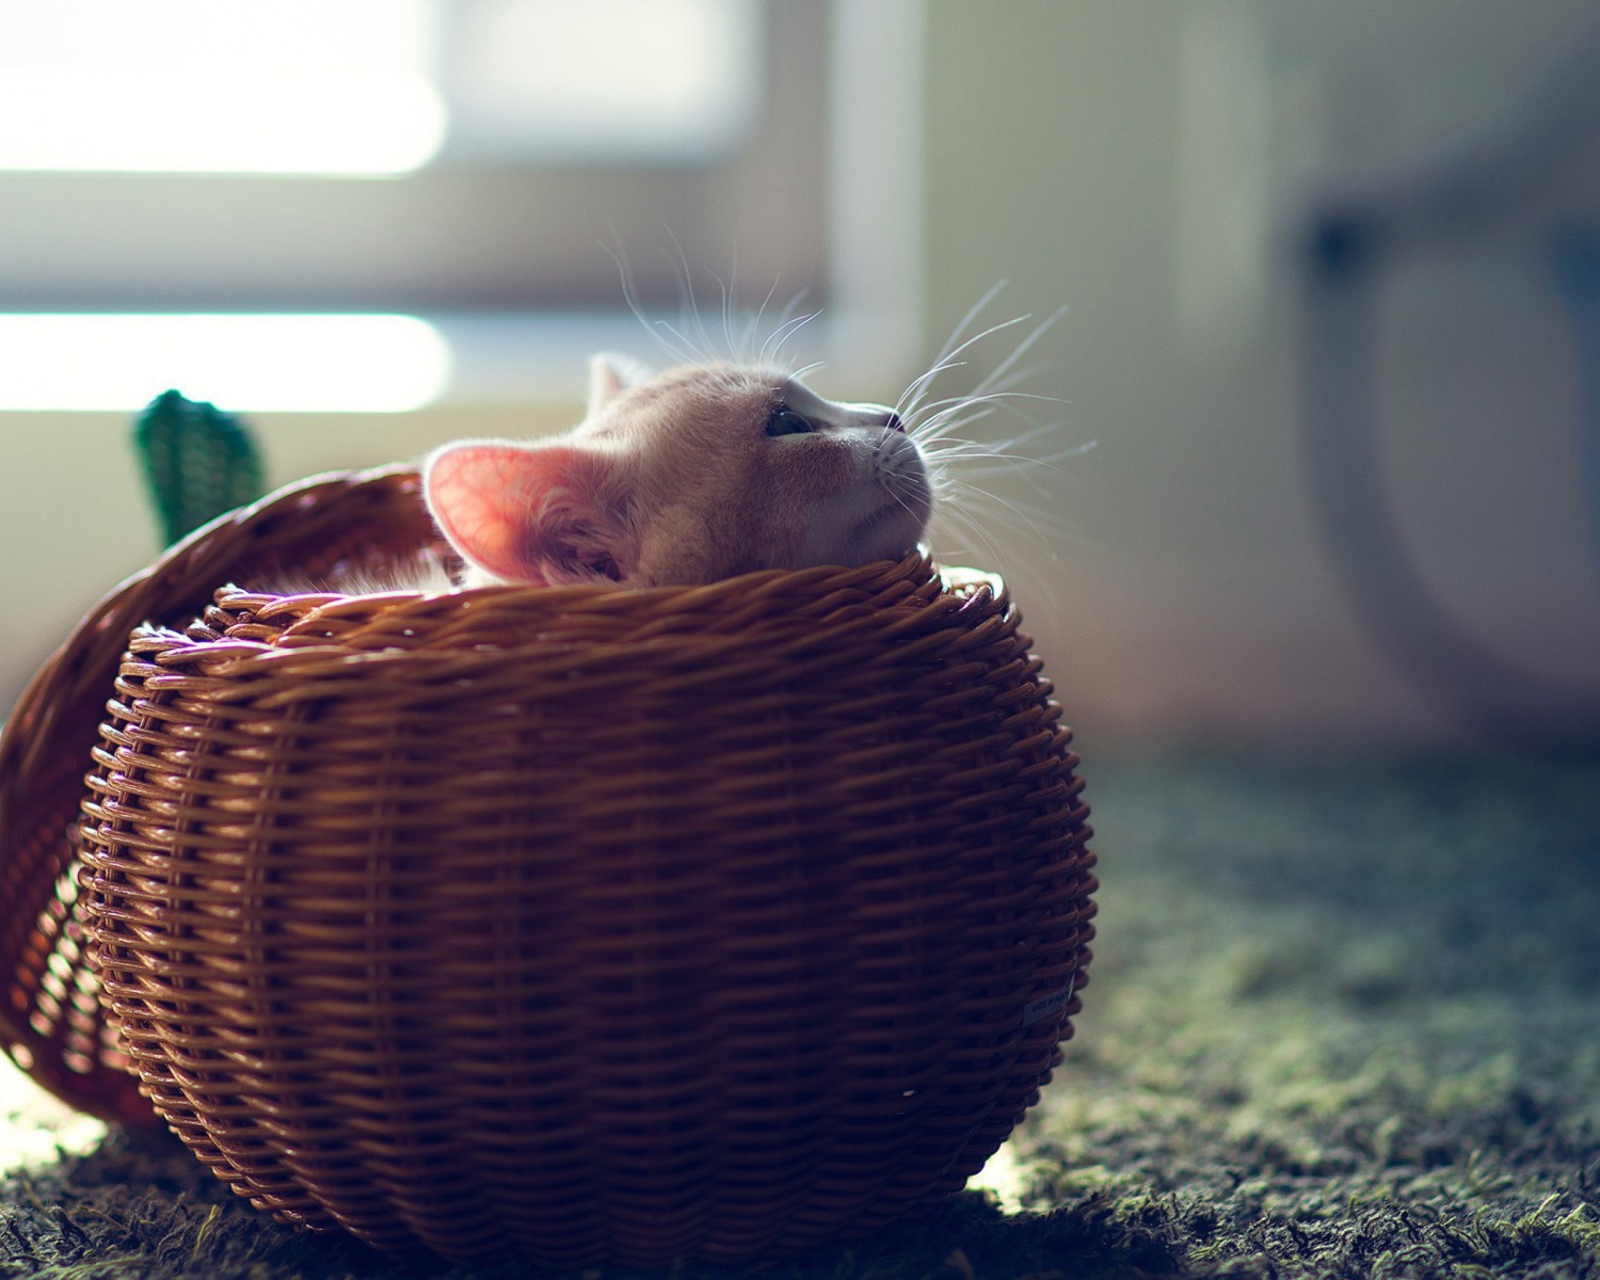 Обои Cute Kitten In Basket 1600x1280